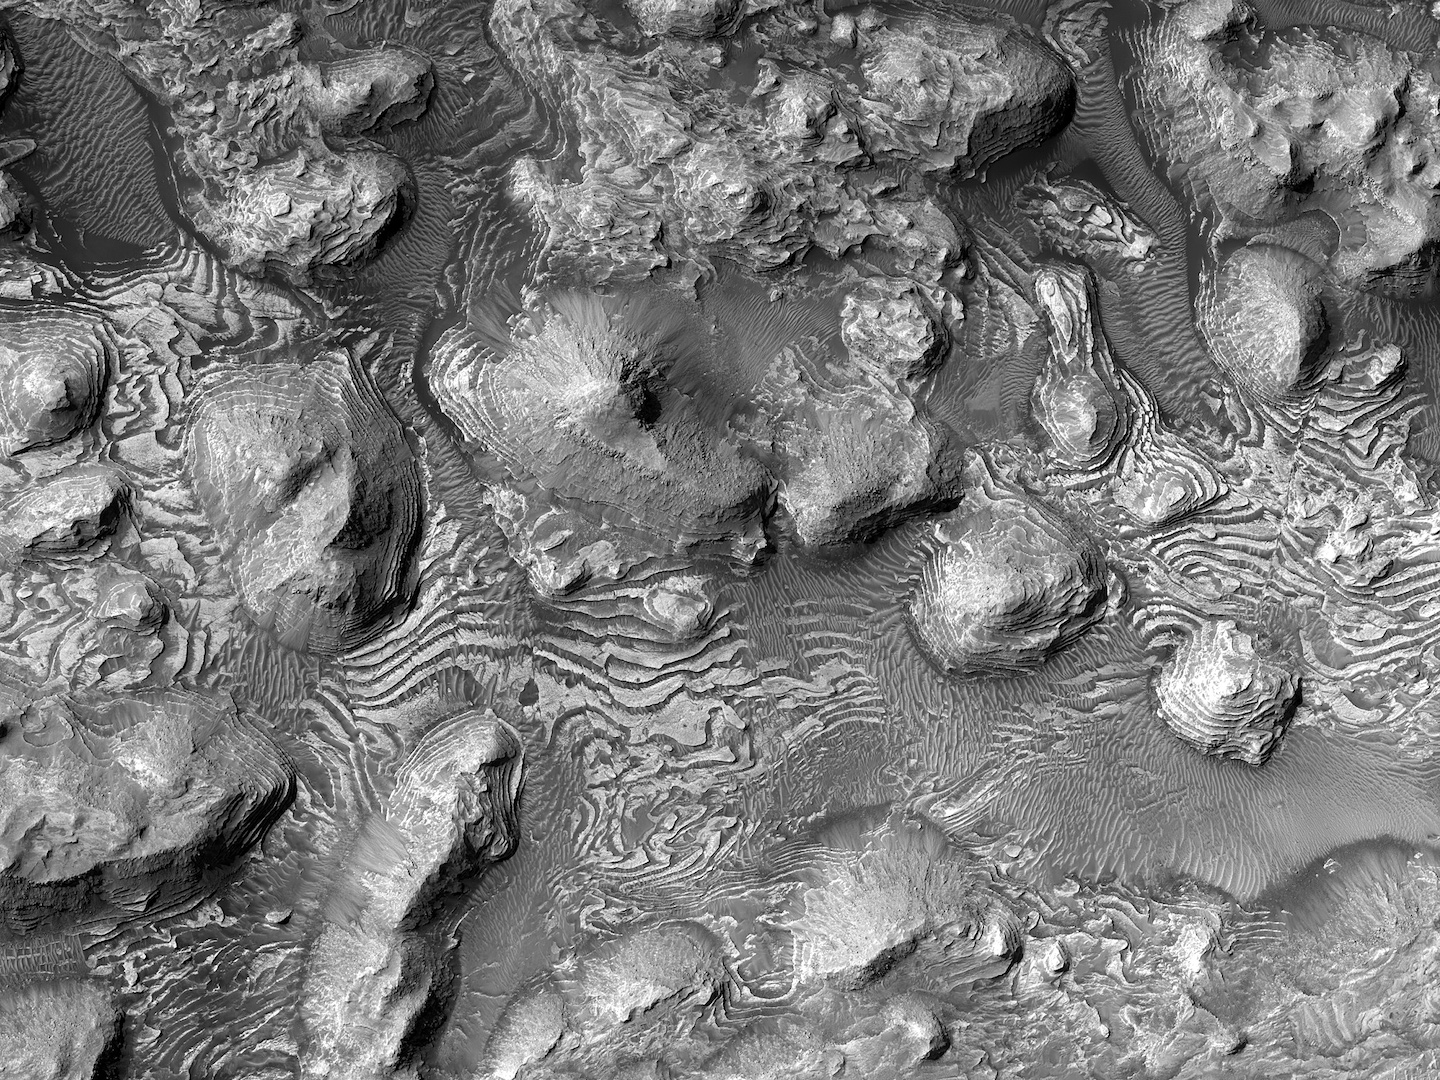 Photo of Arabia Terra courtesy of NASA/JPL/UArizona